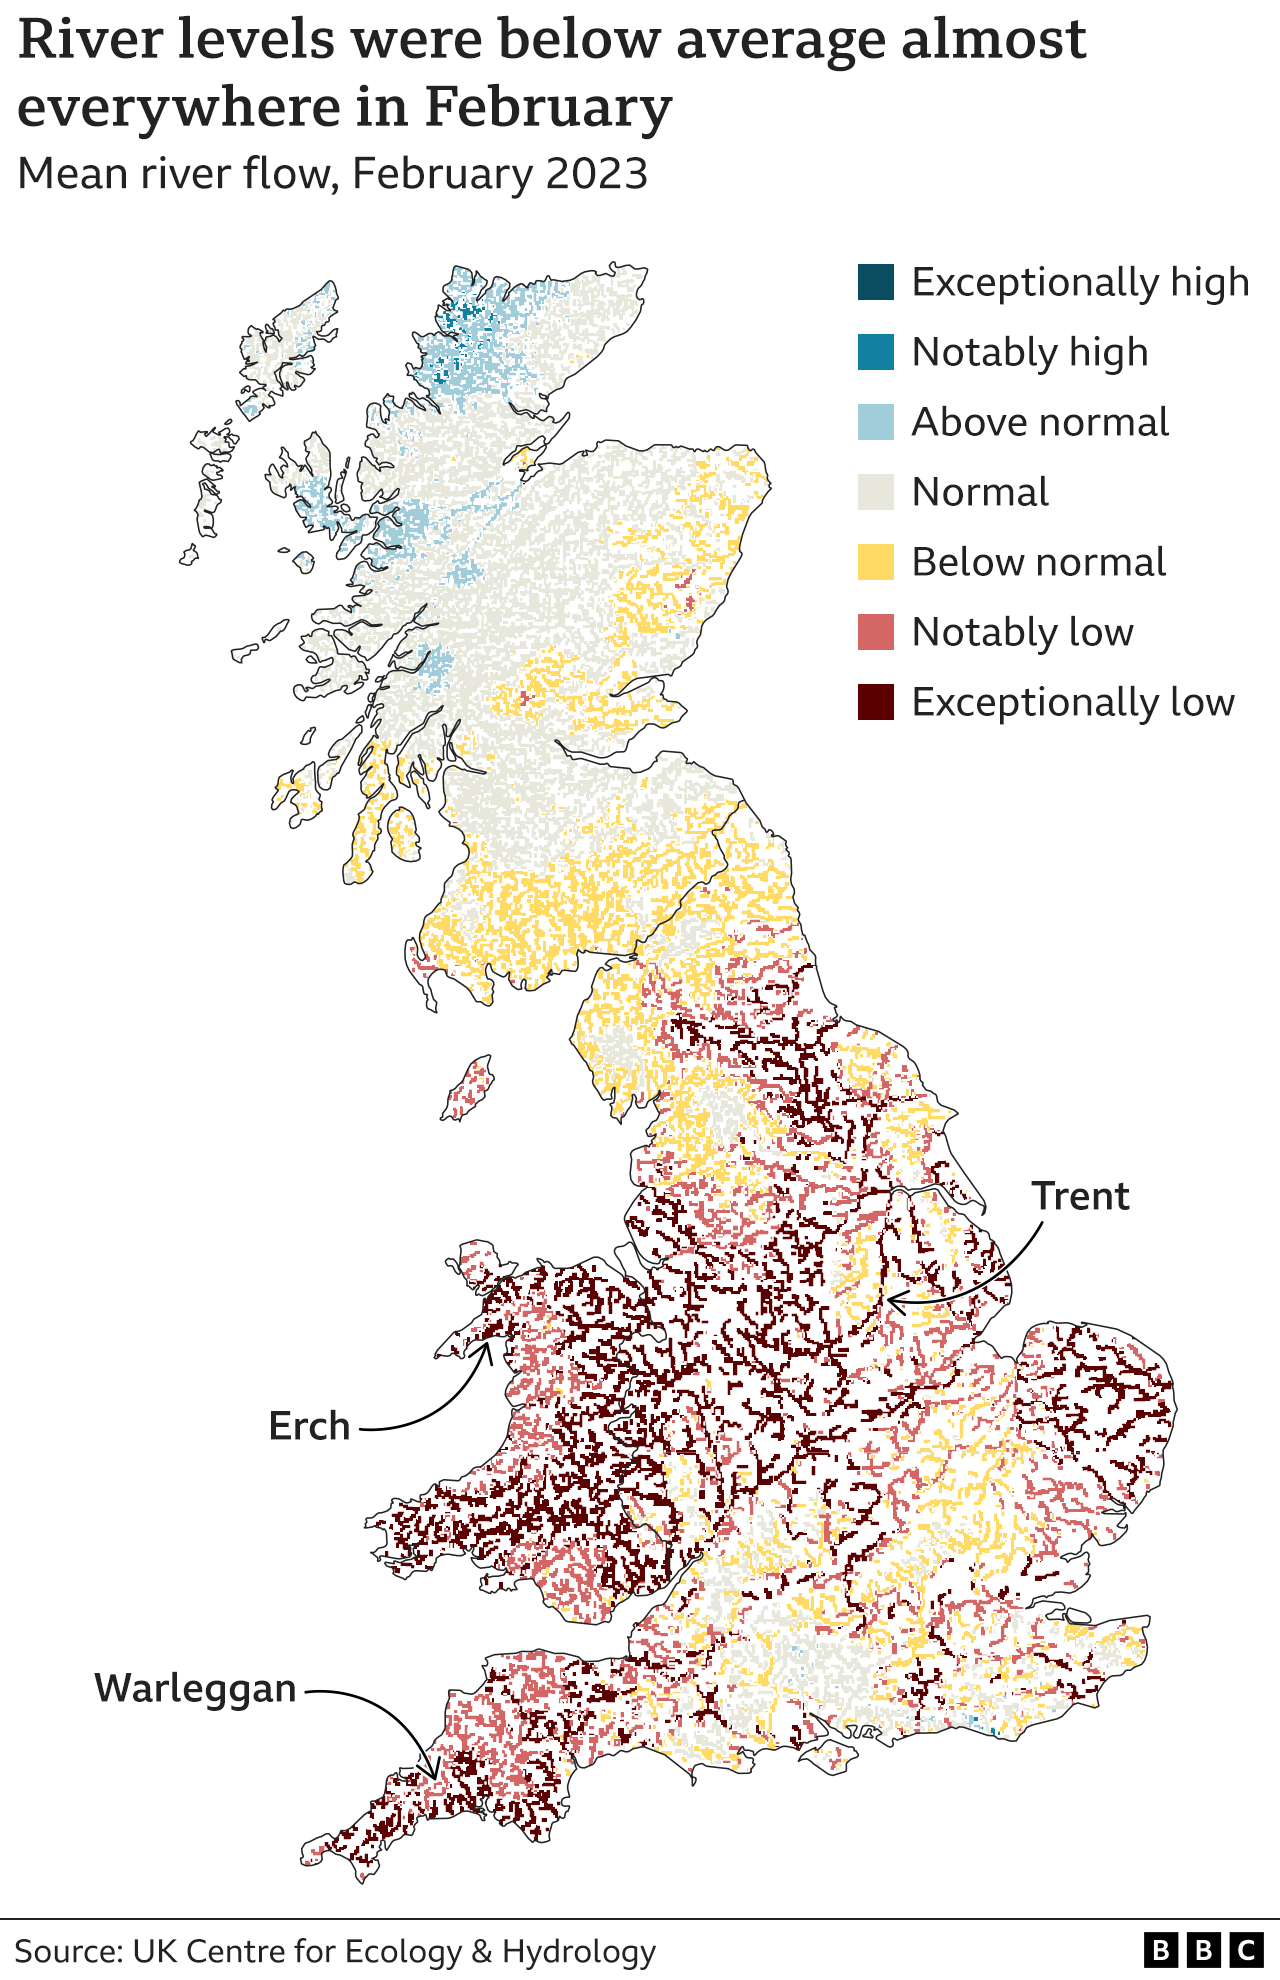 Уровень воды в реках был ниже среднего на большей части территории Великобритании в феврале